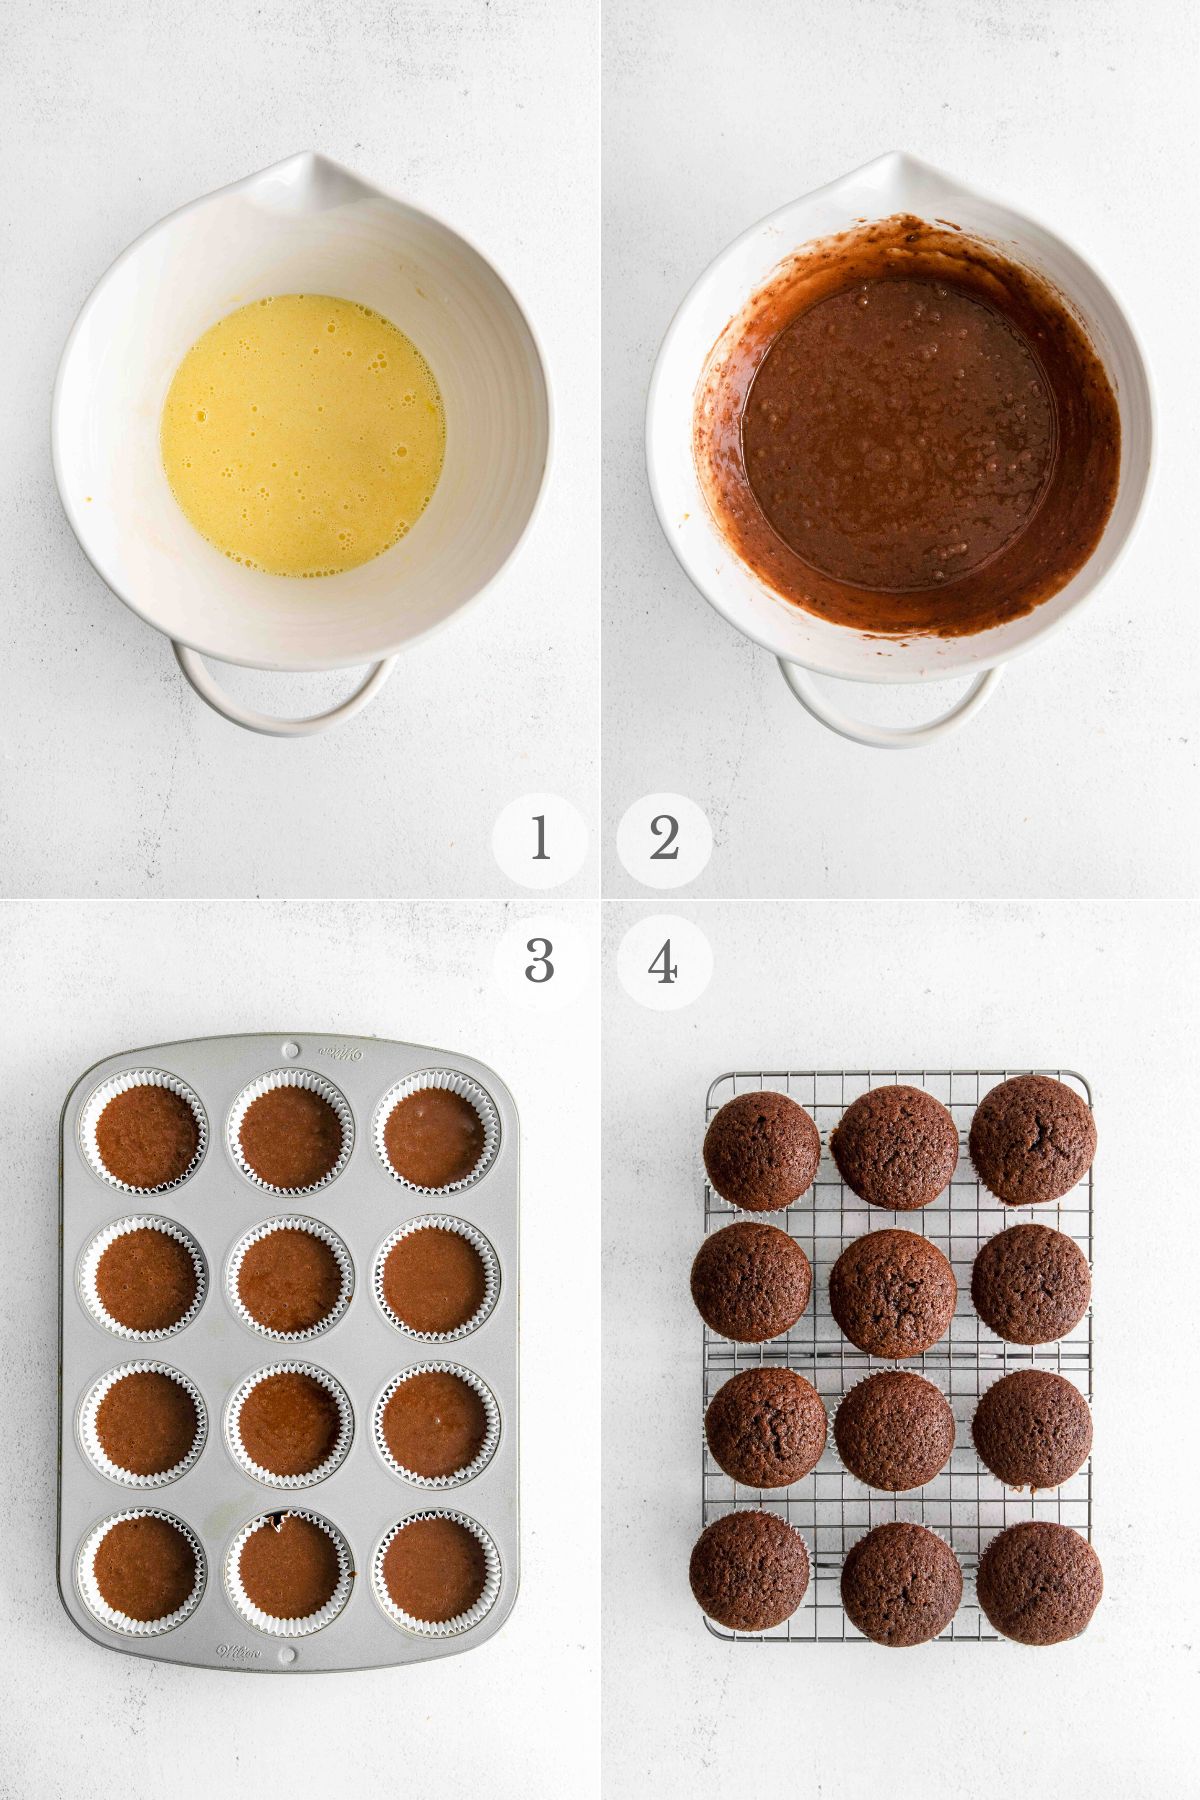 ferrero rocher cupcakes recipe steps 1-4.